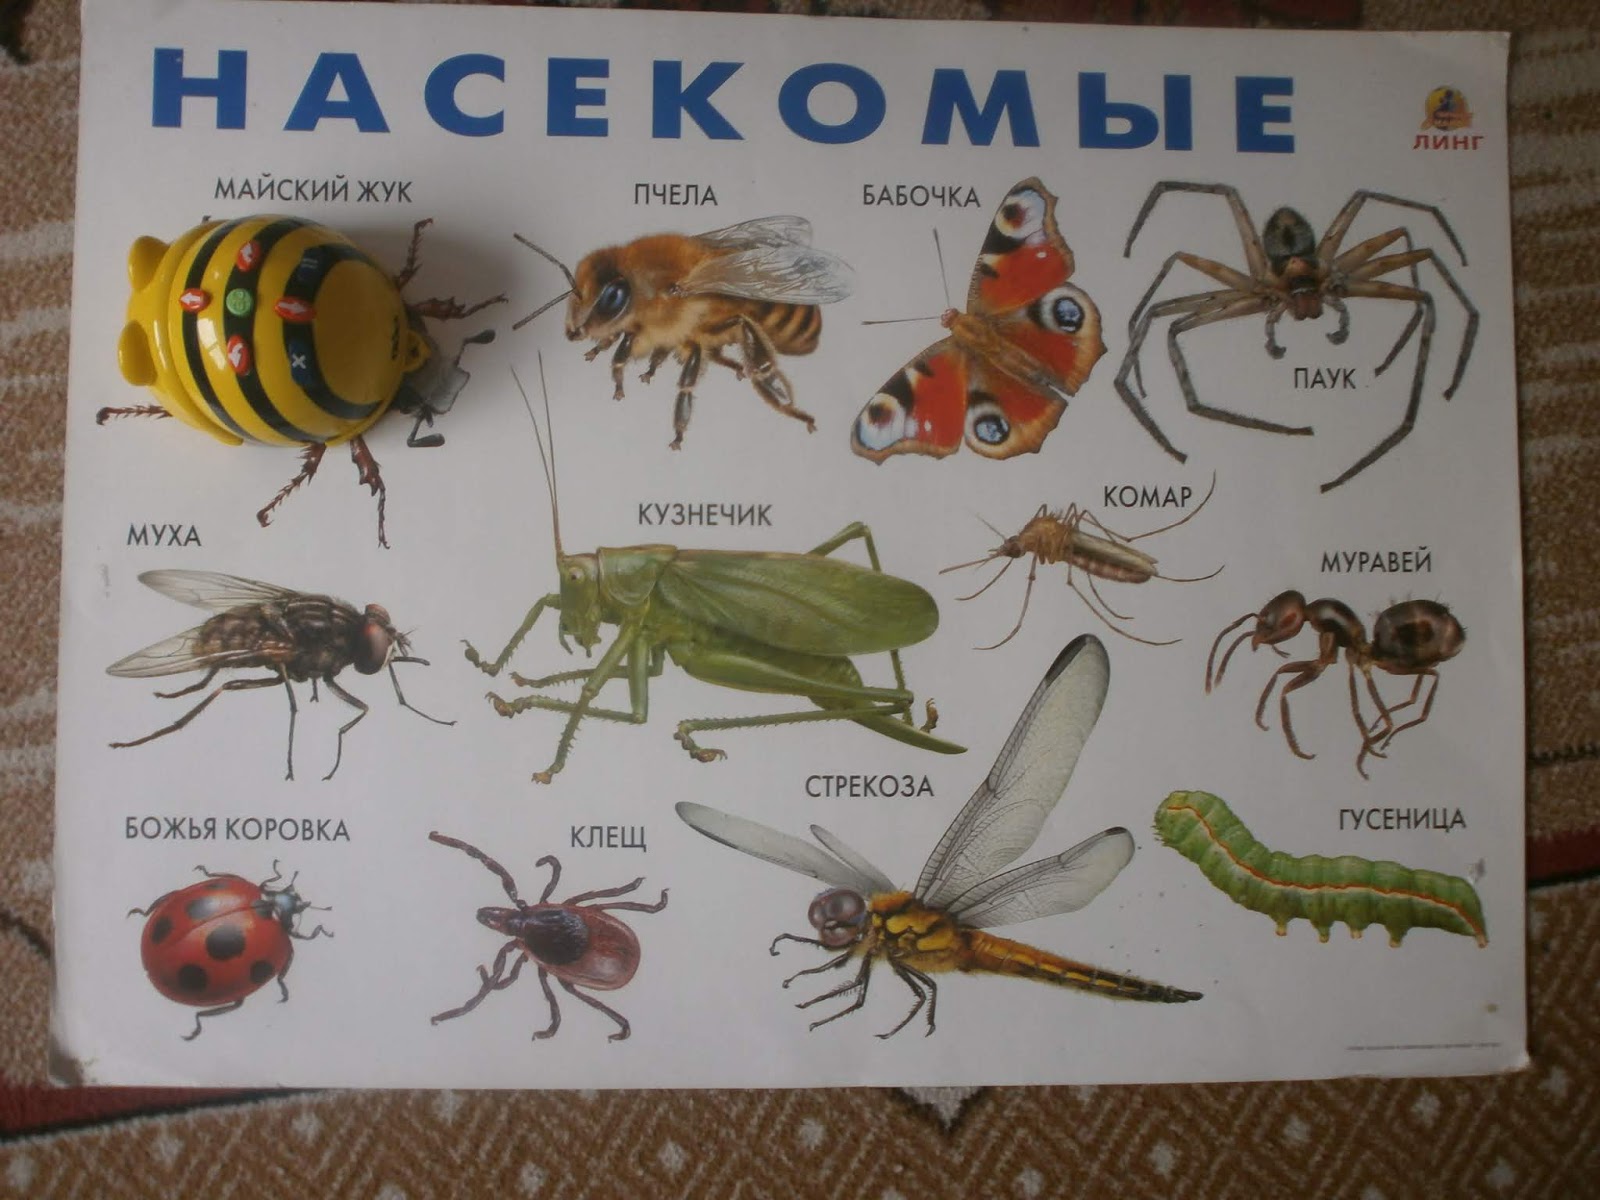 Крупные насекомые россии фото с названиями